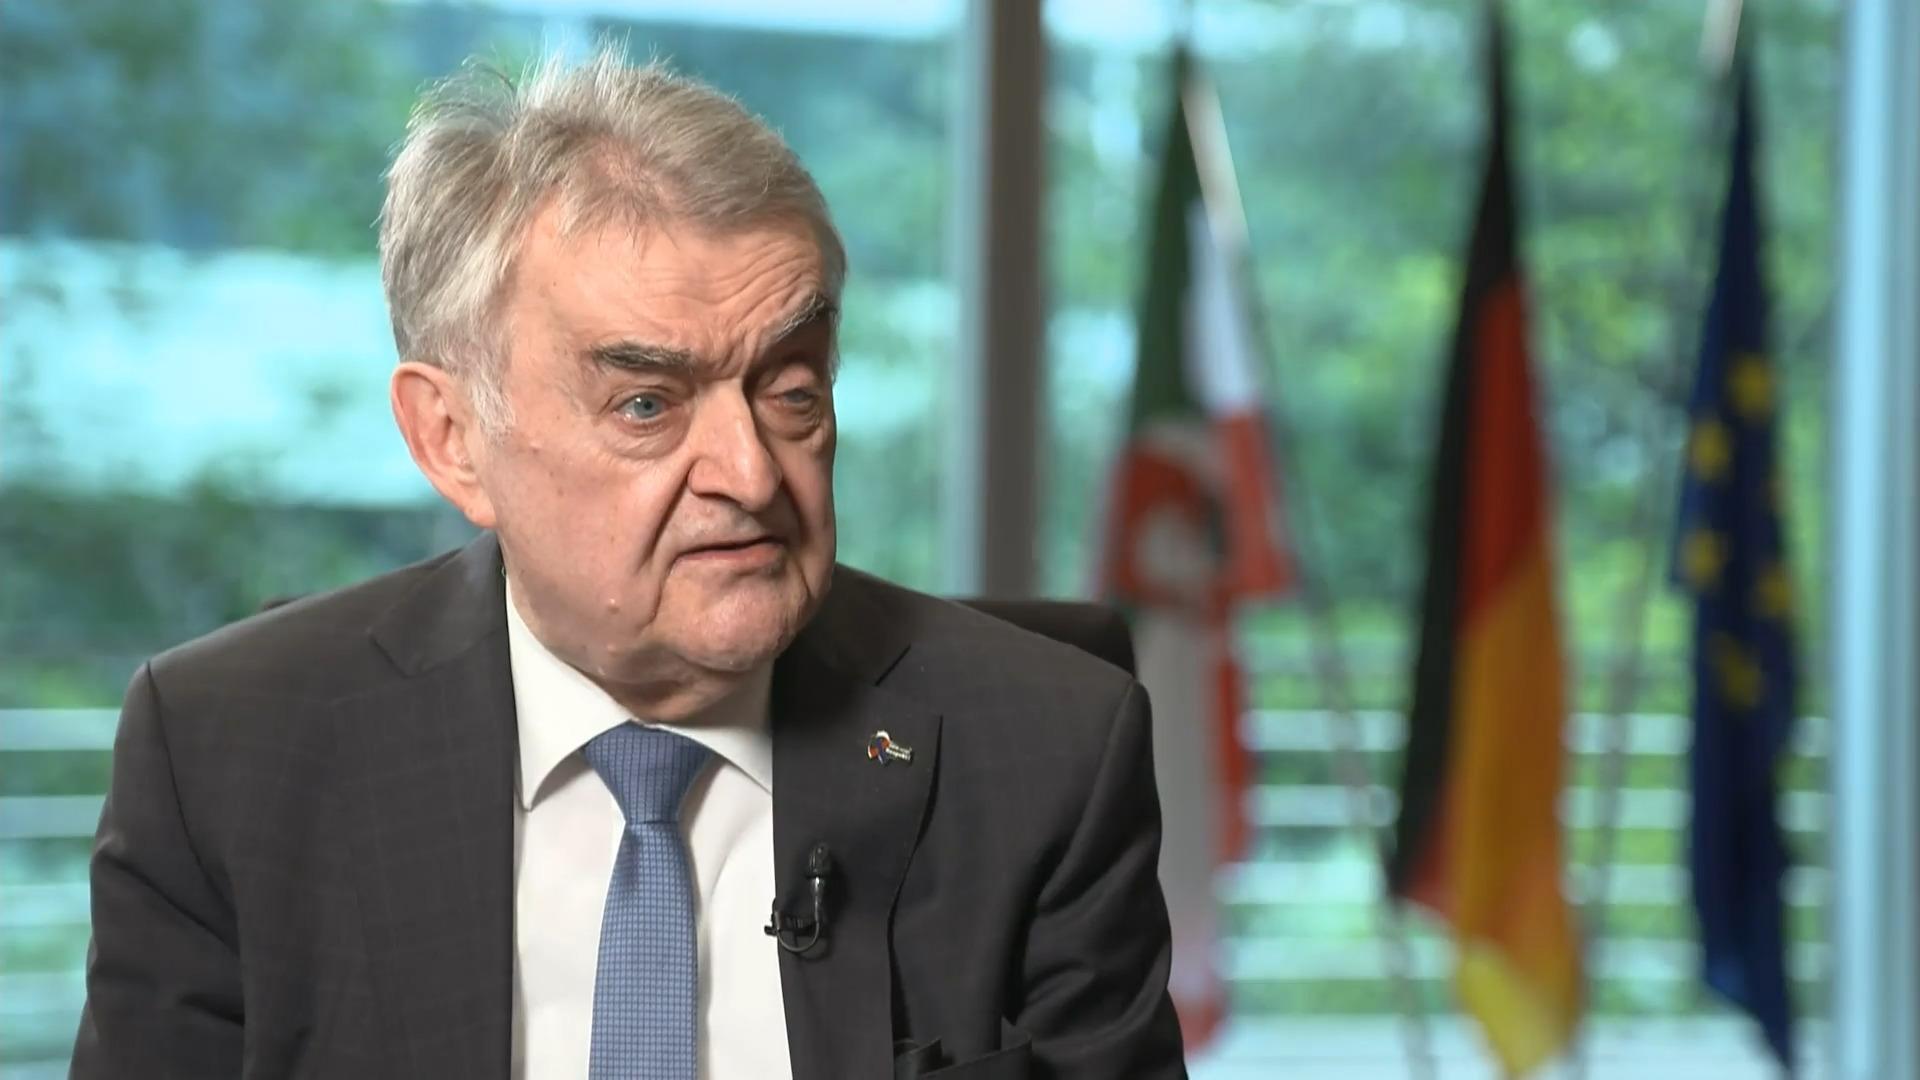 Steigt unsere Kriminalität durch Ausländer? NRW-Innenminister Herbert Reul im RTL-Interview